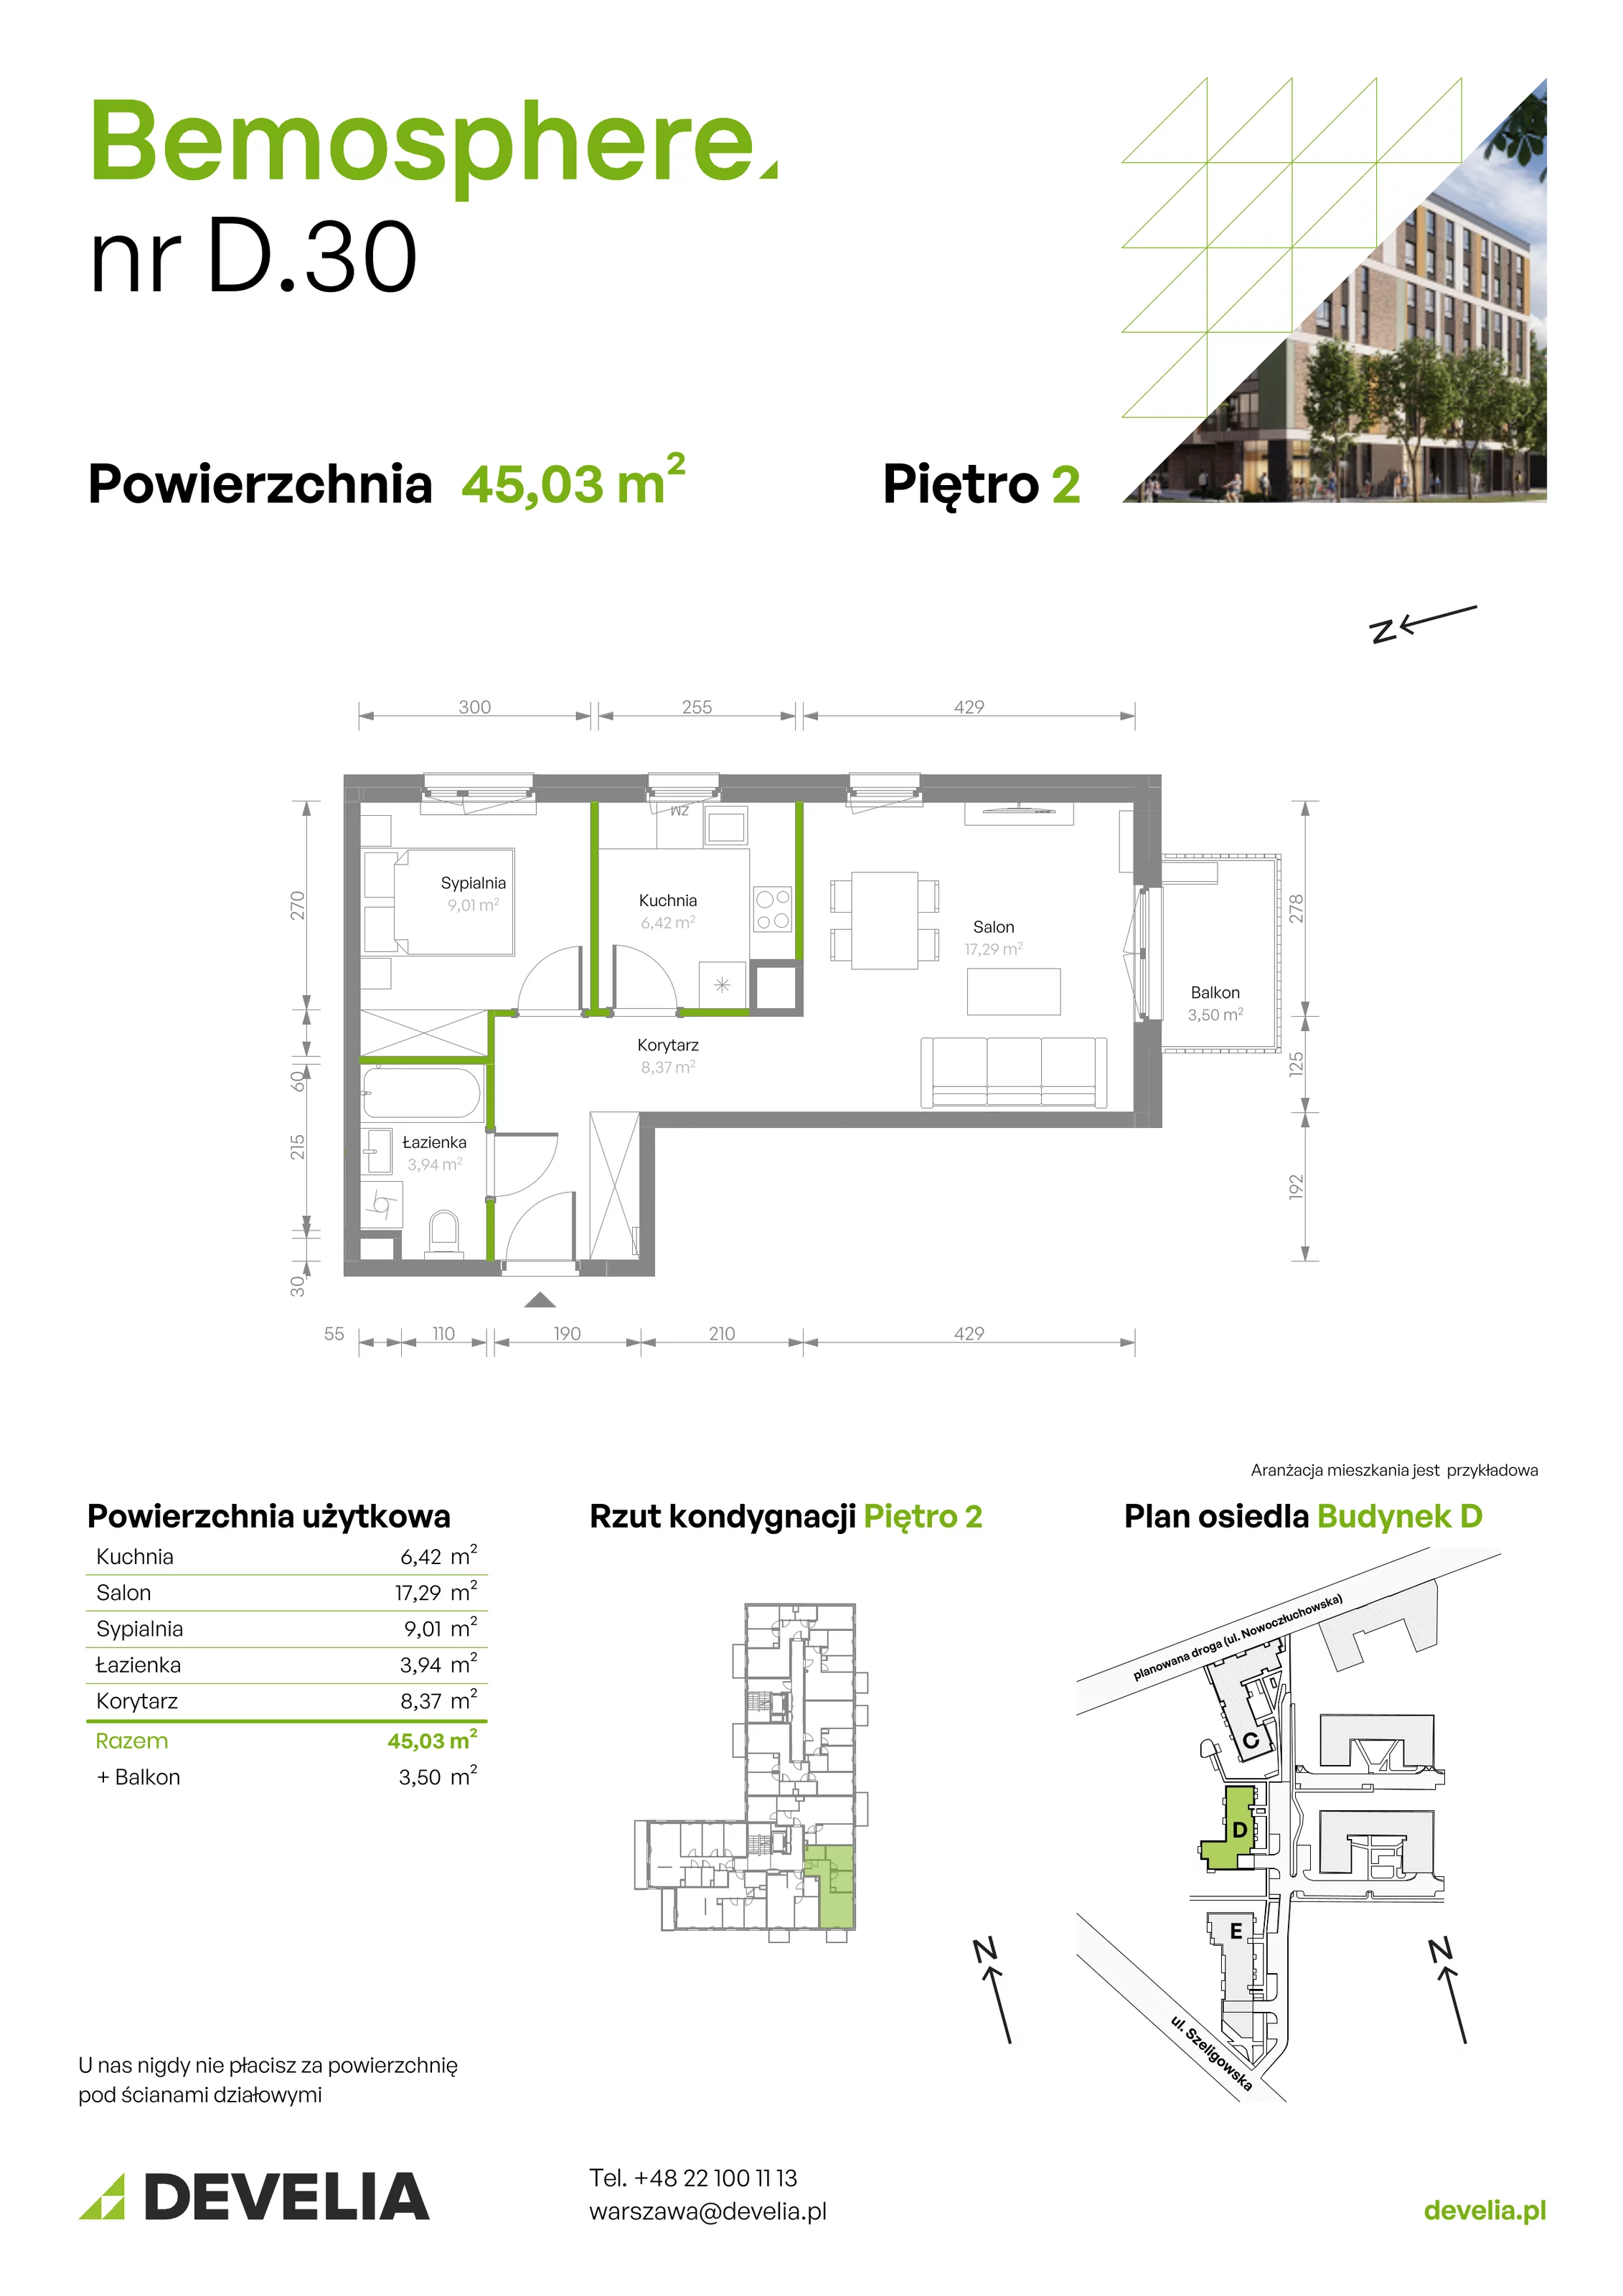 Mieszkanie 45,03 m², piętro 2, oferta nr D/030, Bemosphere, Warszawa, Bemowo, Chrzanów, ul. Szeligowska 24